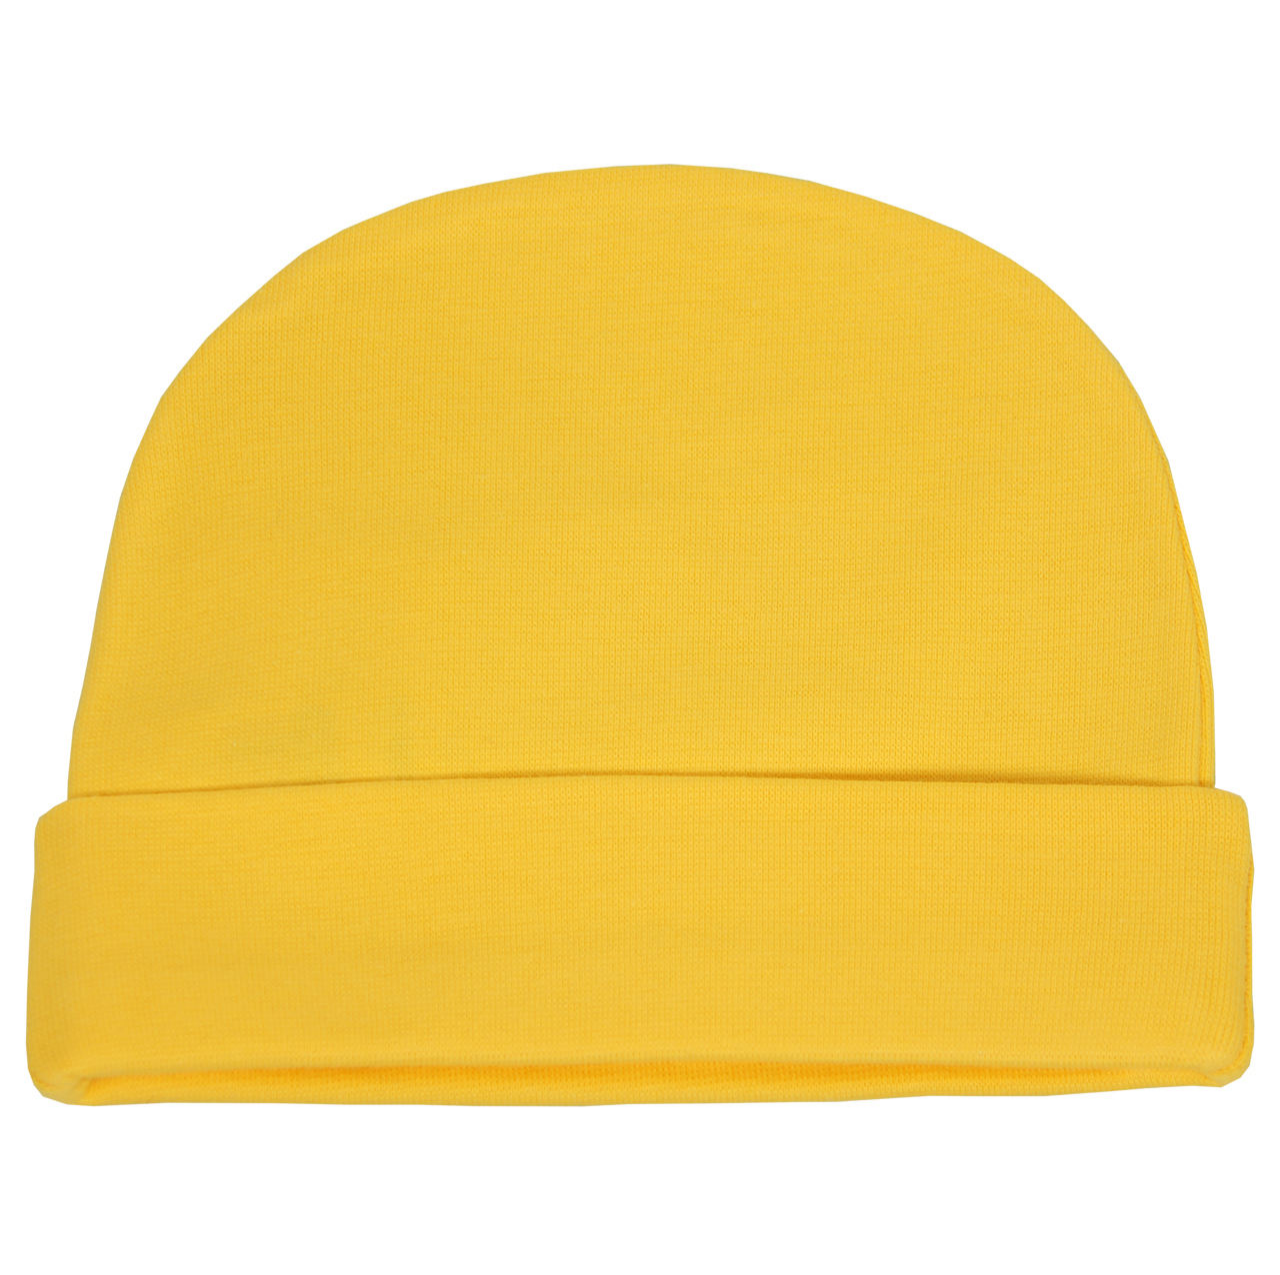 کلاه و شال و دستکش نوزاد نیلی-Nili کلاه نوزادی کد 001 - کلاه رنگ زرد